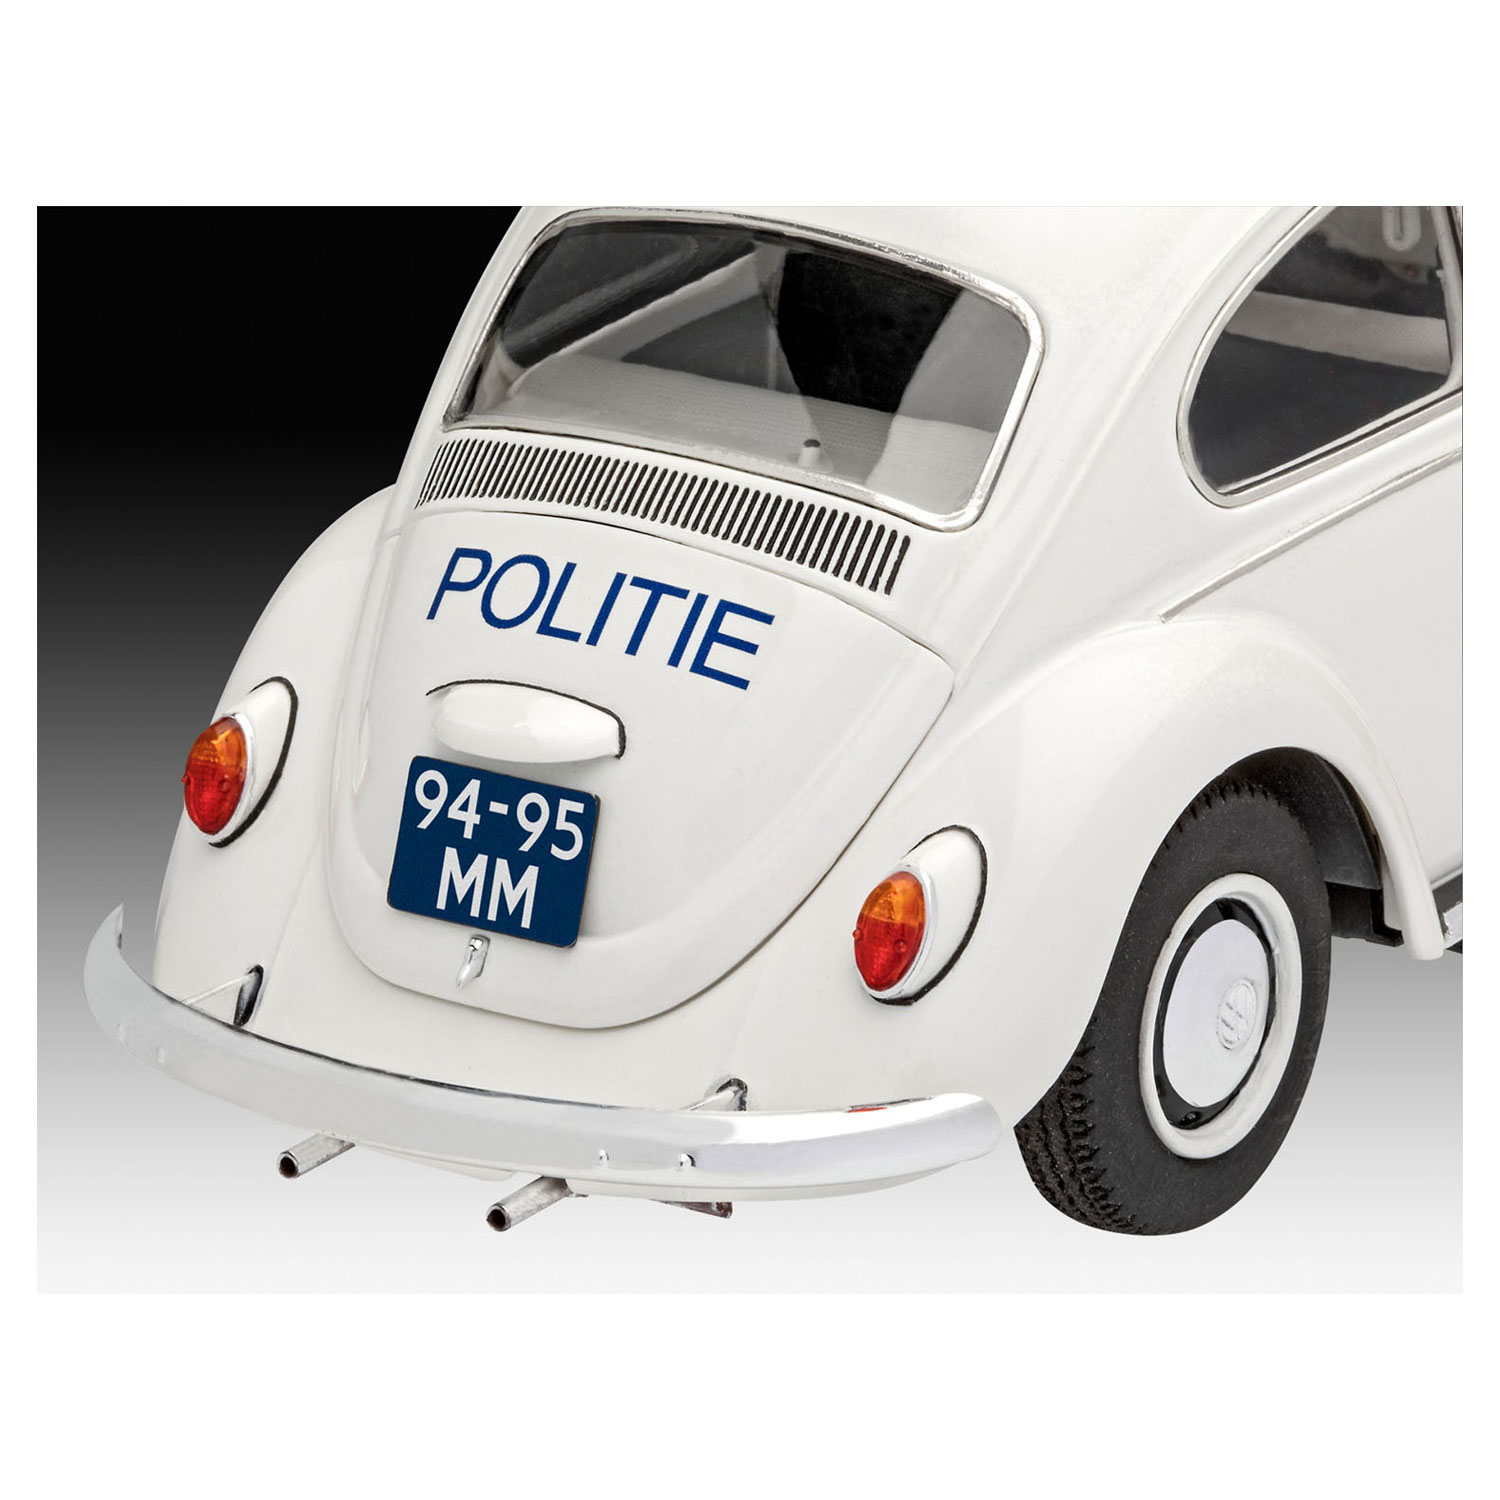 Revell Model Set Volkswagen Beetle Politie